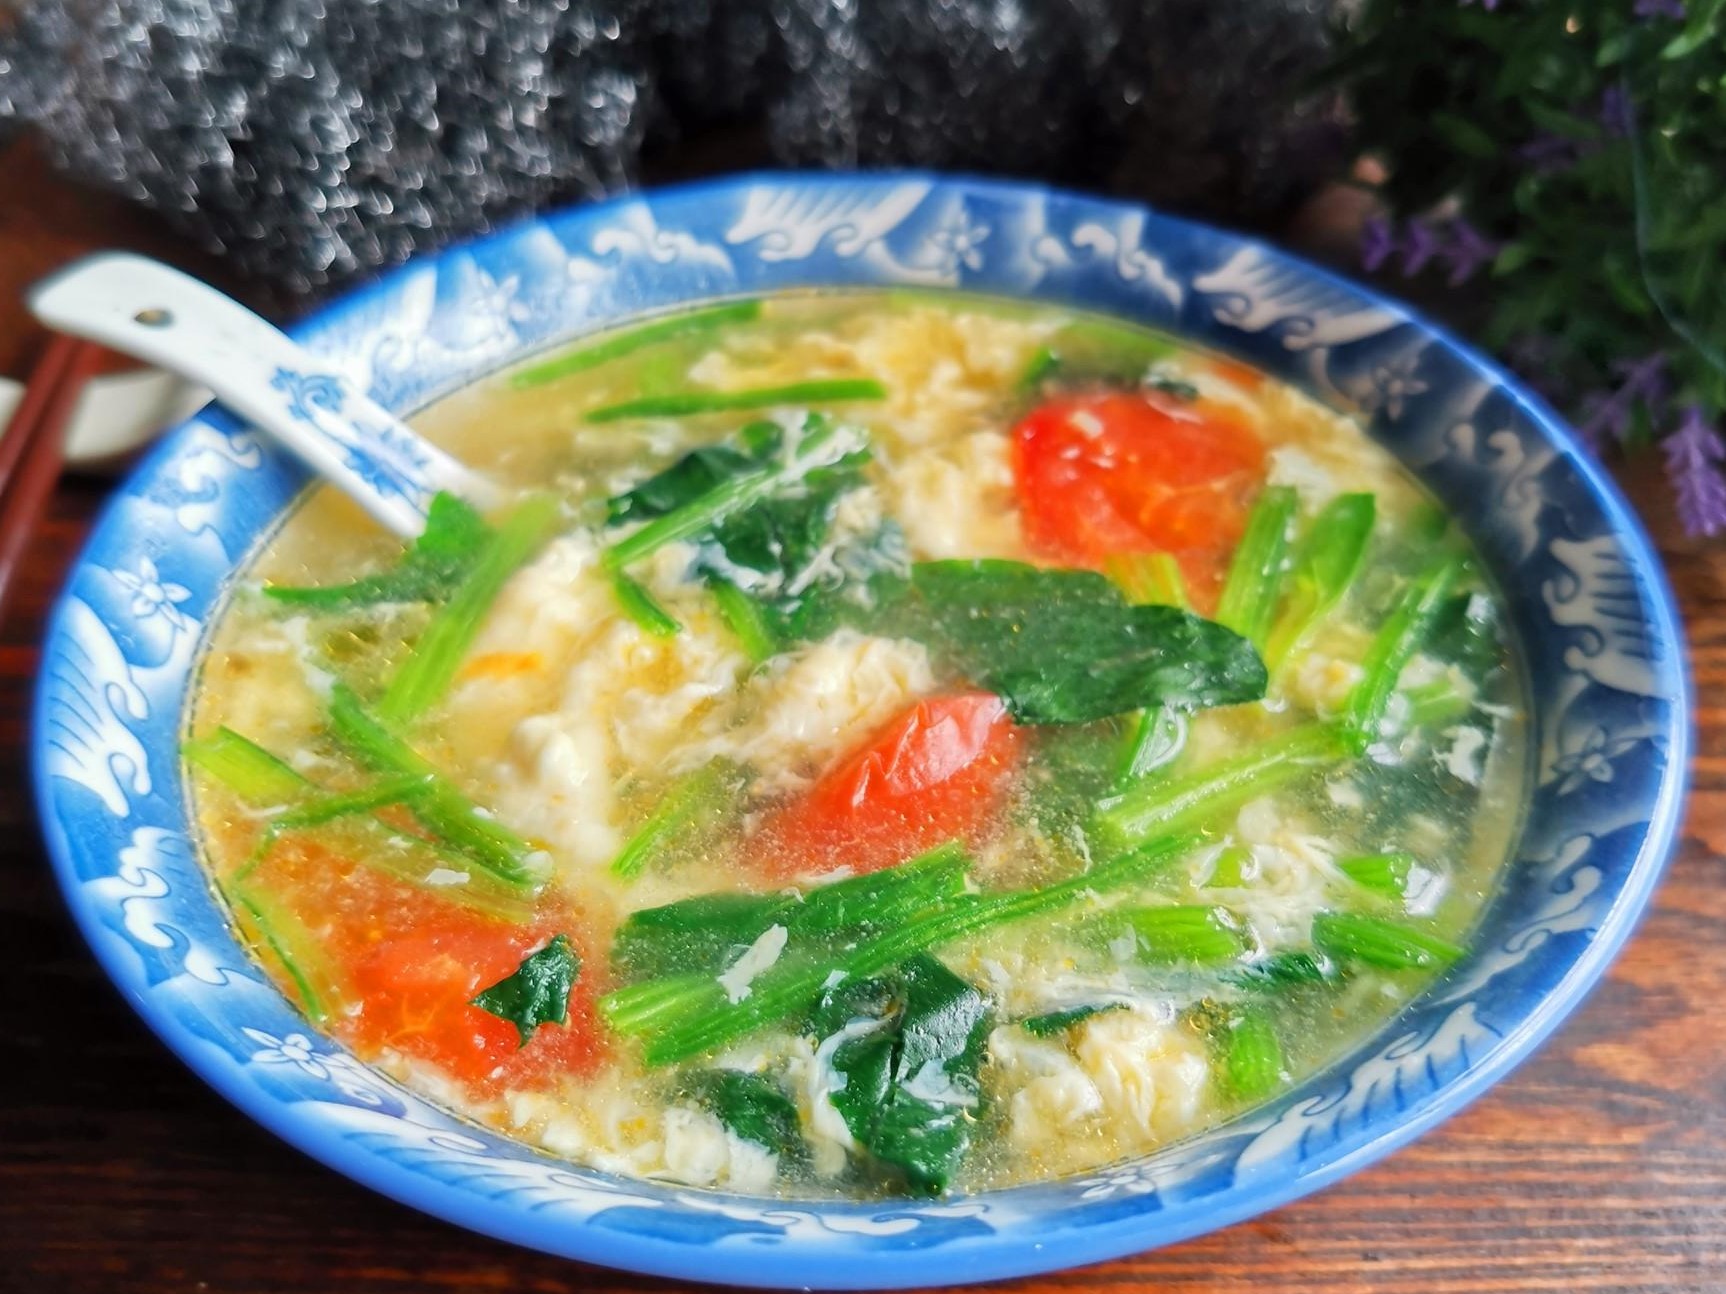 Tomato, spinach egg drop soup recipe